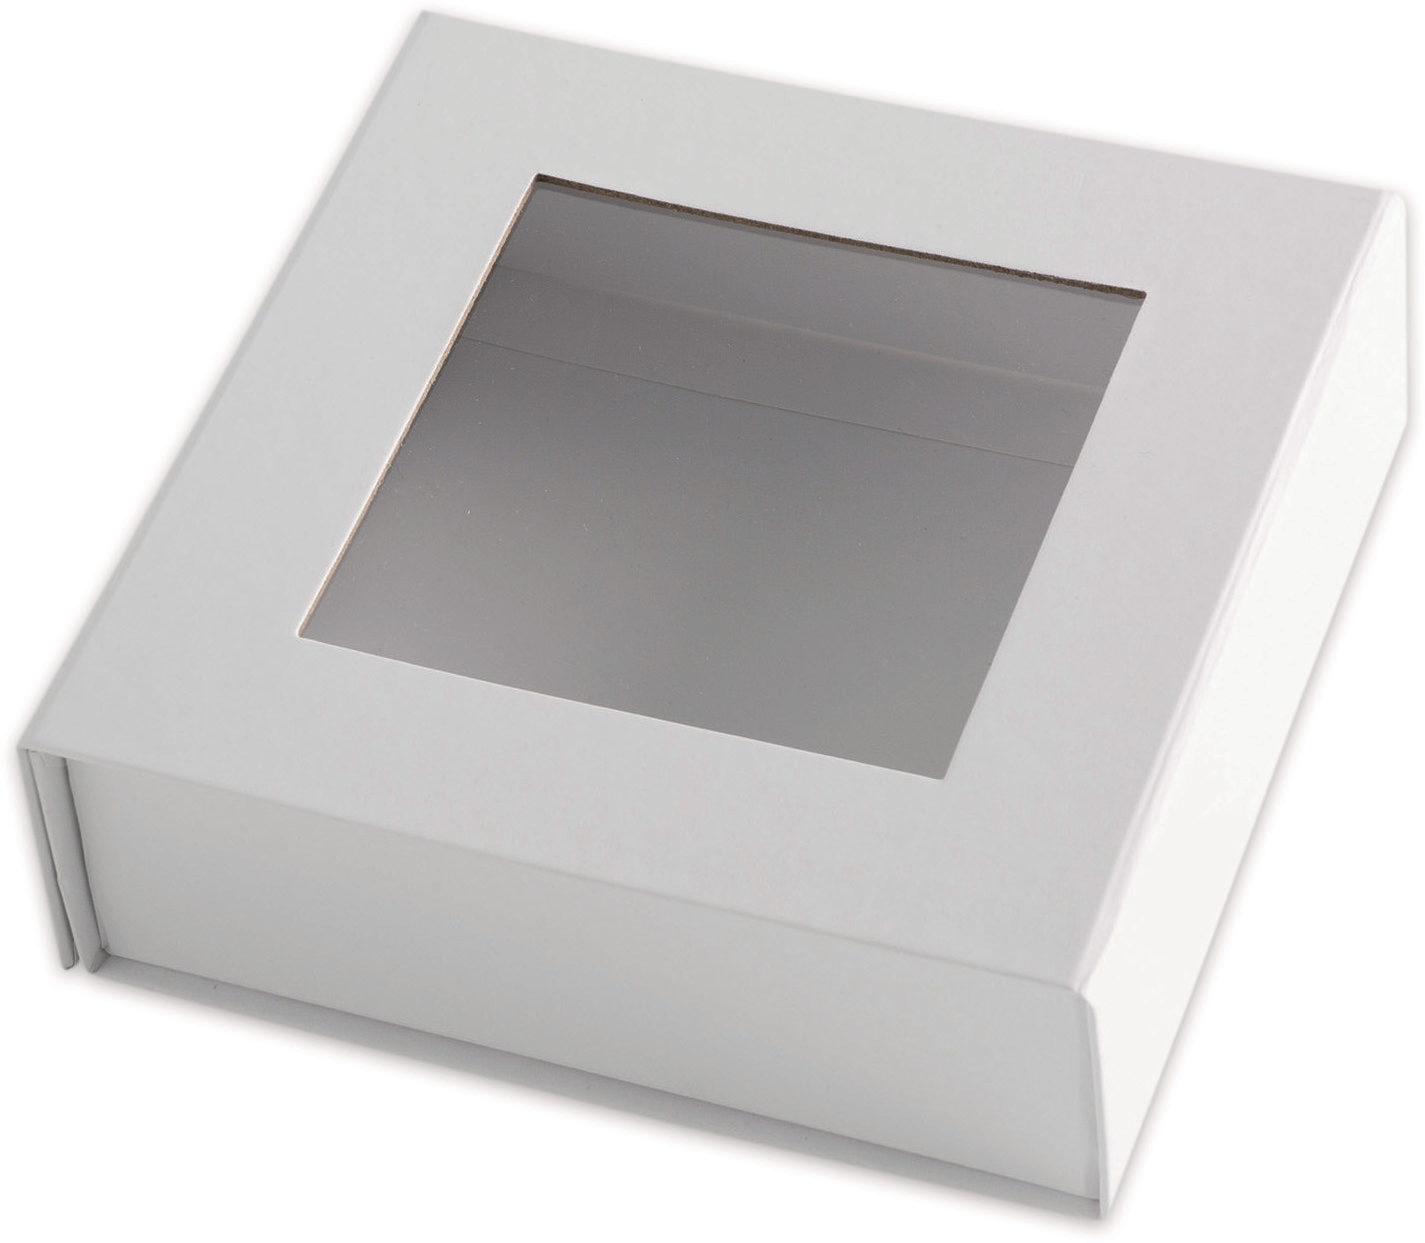 ELCO Box cadeau avec grande fenêtre 82111.10 blanc, 15x15x5cm 5 pcs. blanc, 15x15x5cm 5 pcs.